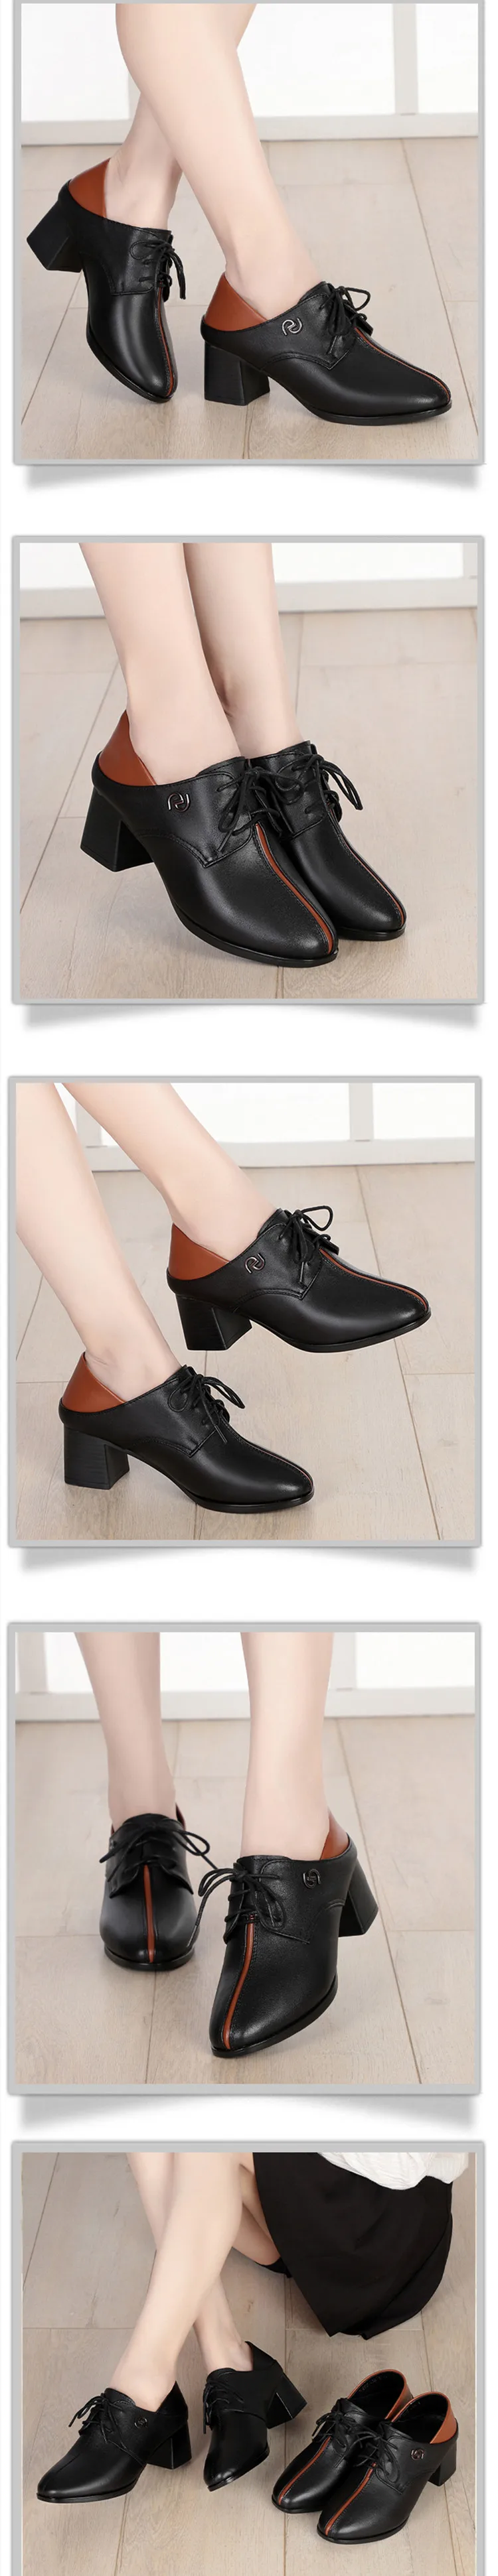 AIYUQI женская обувь; коллекция года; сезон осень; новые модельные туфли; женская официальная обувь из натуральной кожи; повседневная обувь на шнуровке; большие размеры 41, 42, 43